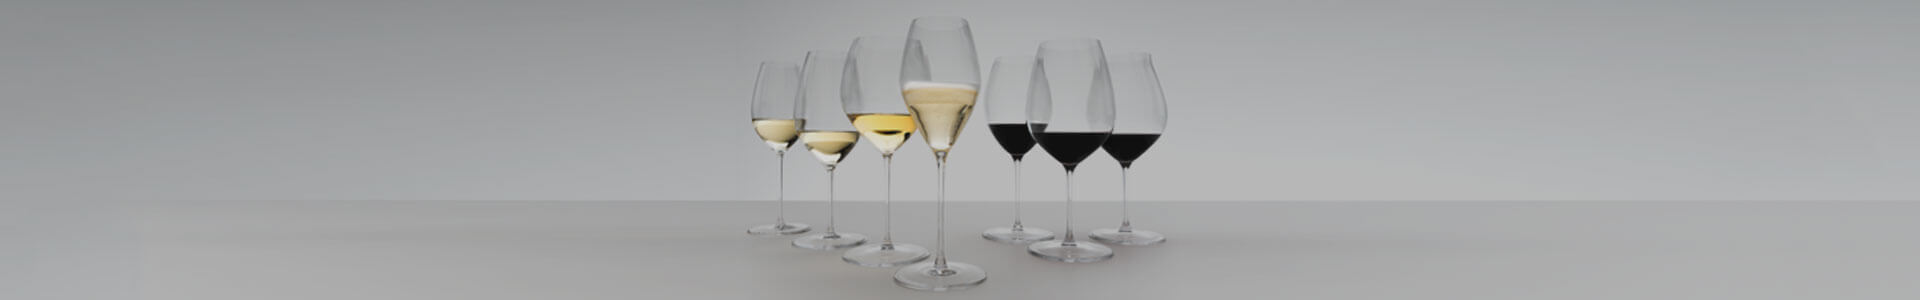 Verschiedene Weingläser aus der Serie Performance von Riedel.